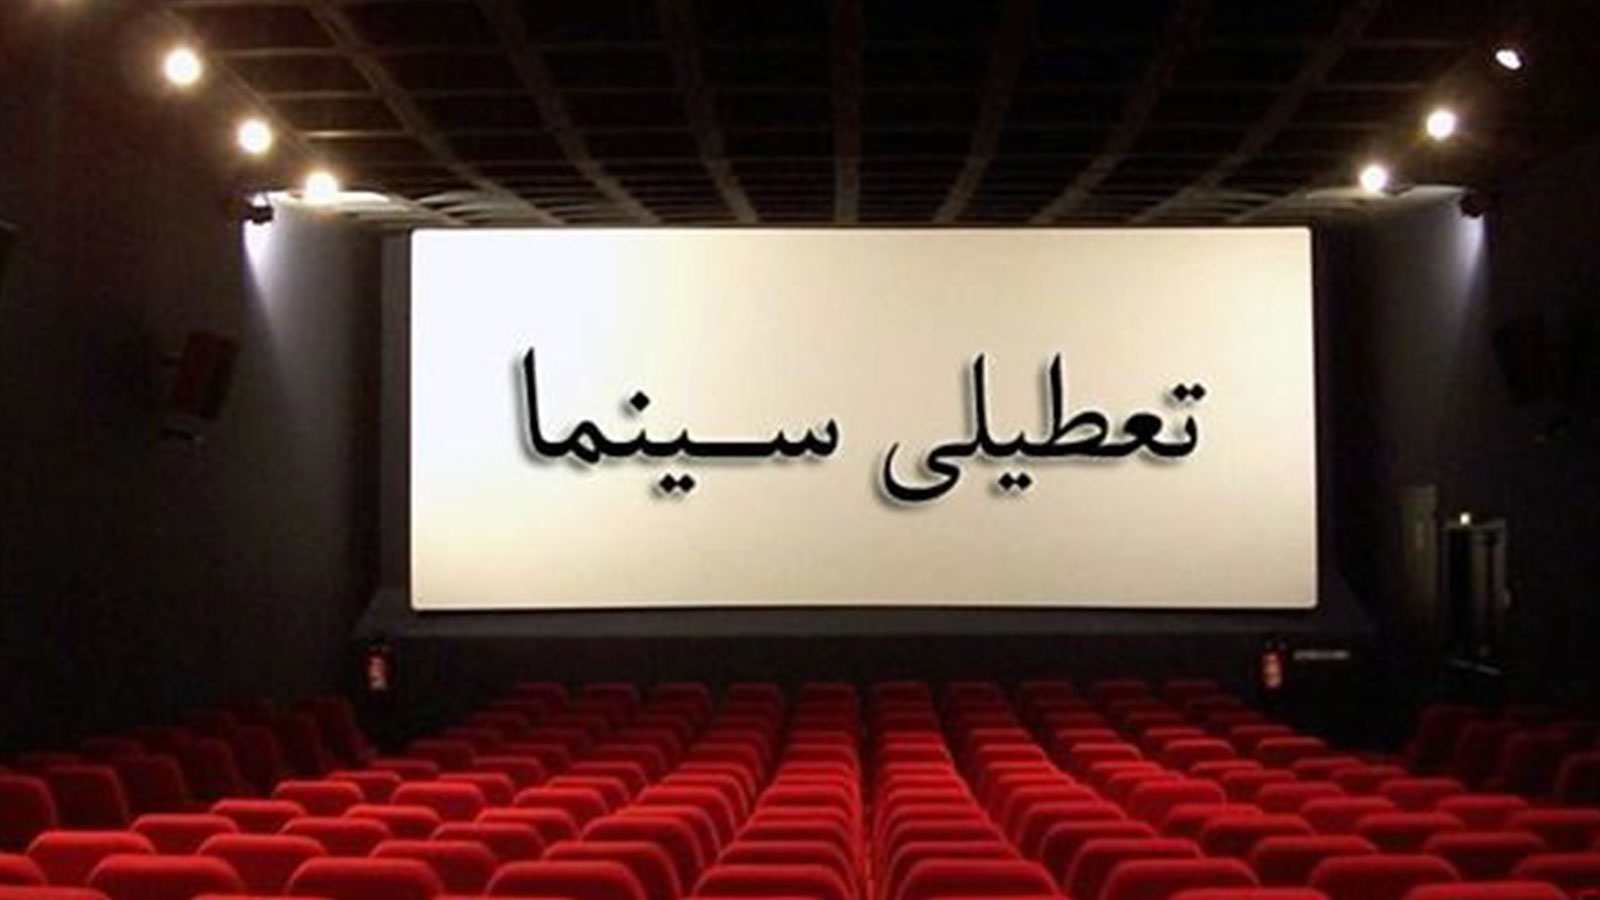 اعلام روزهای تعطیلی سینماها همزمان با اربعین